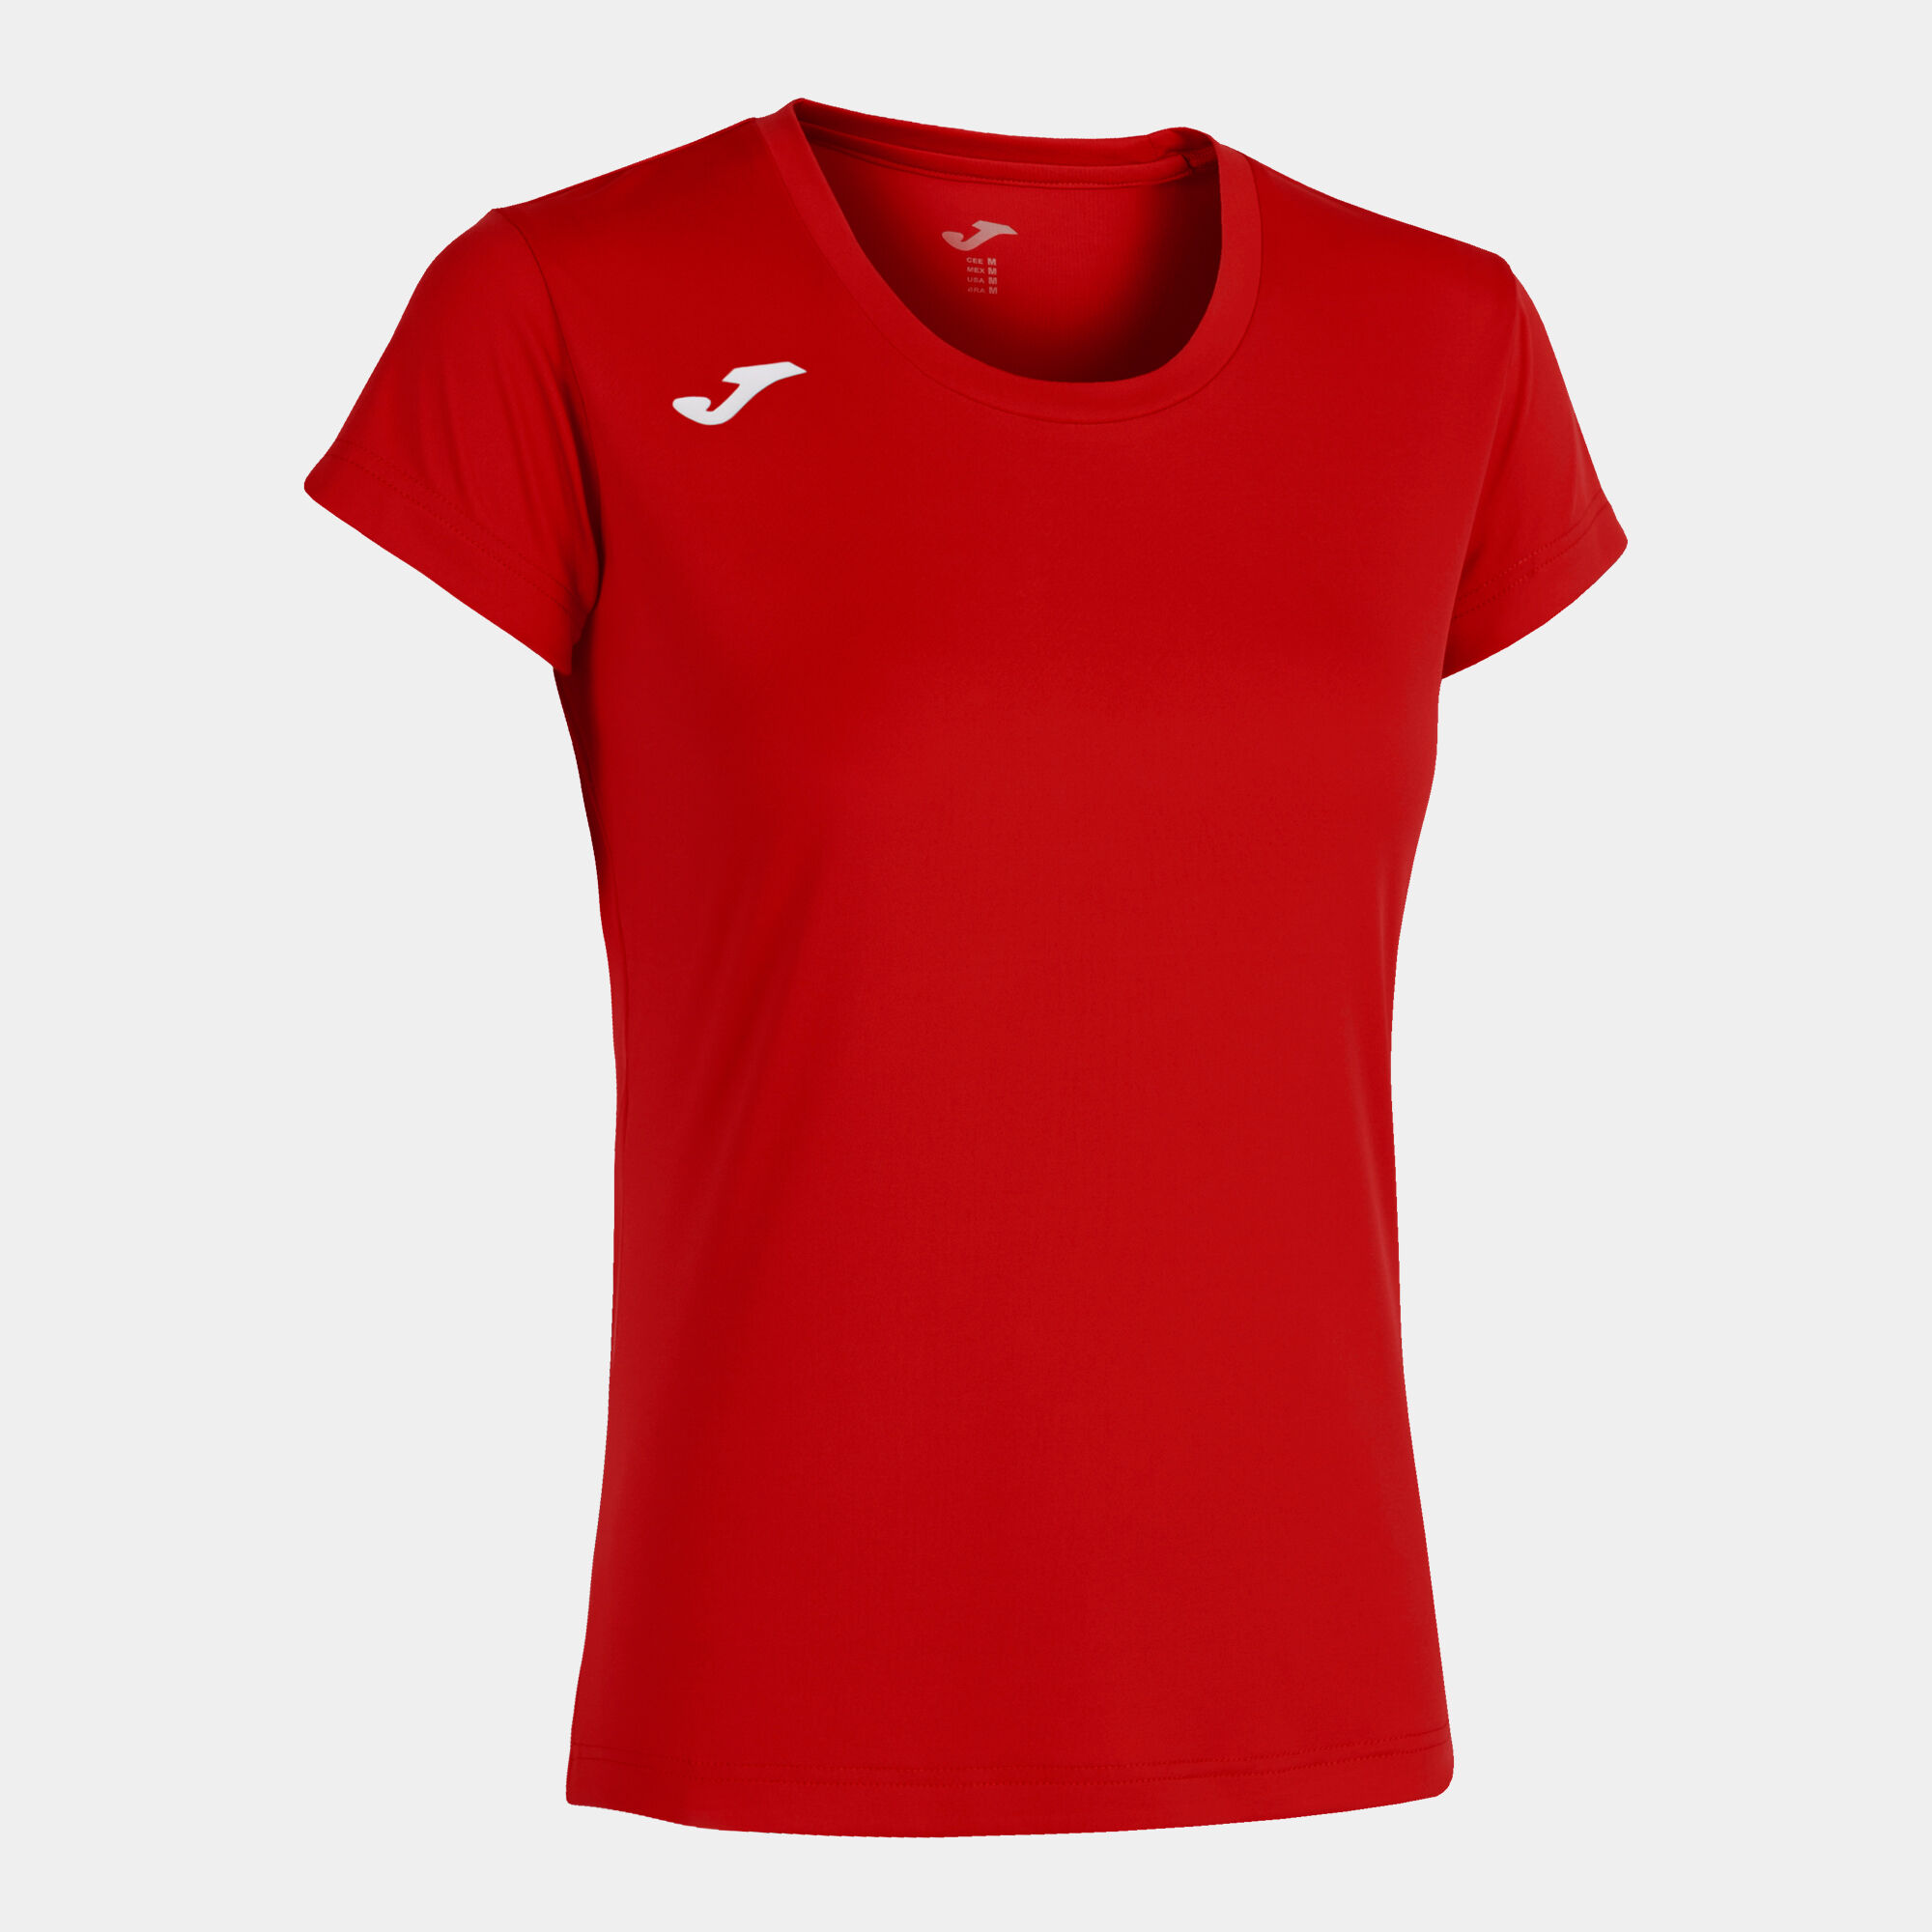 Camiseta manga corta mujer Record II rojo